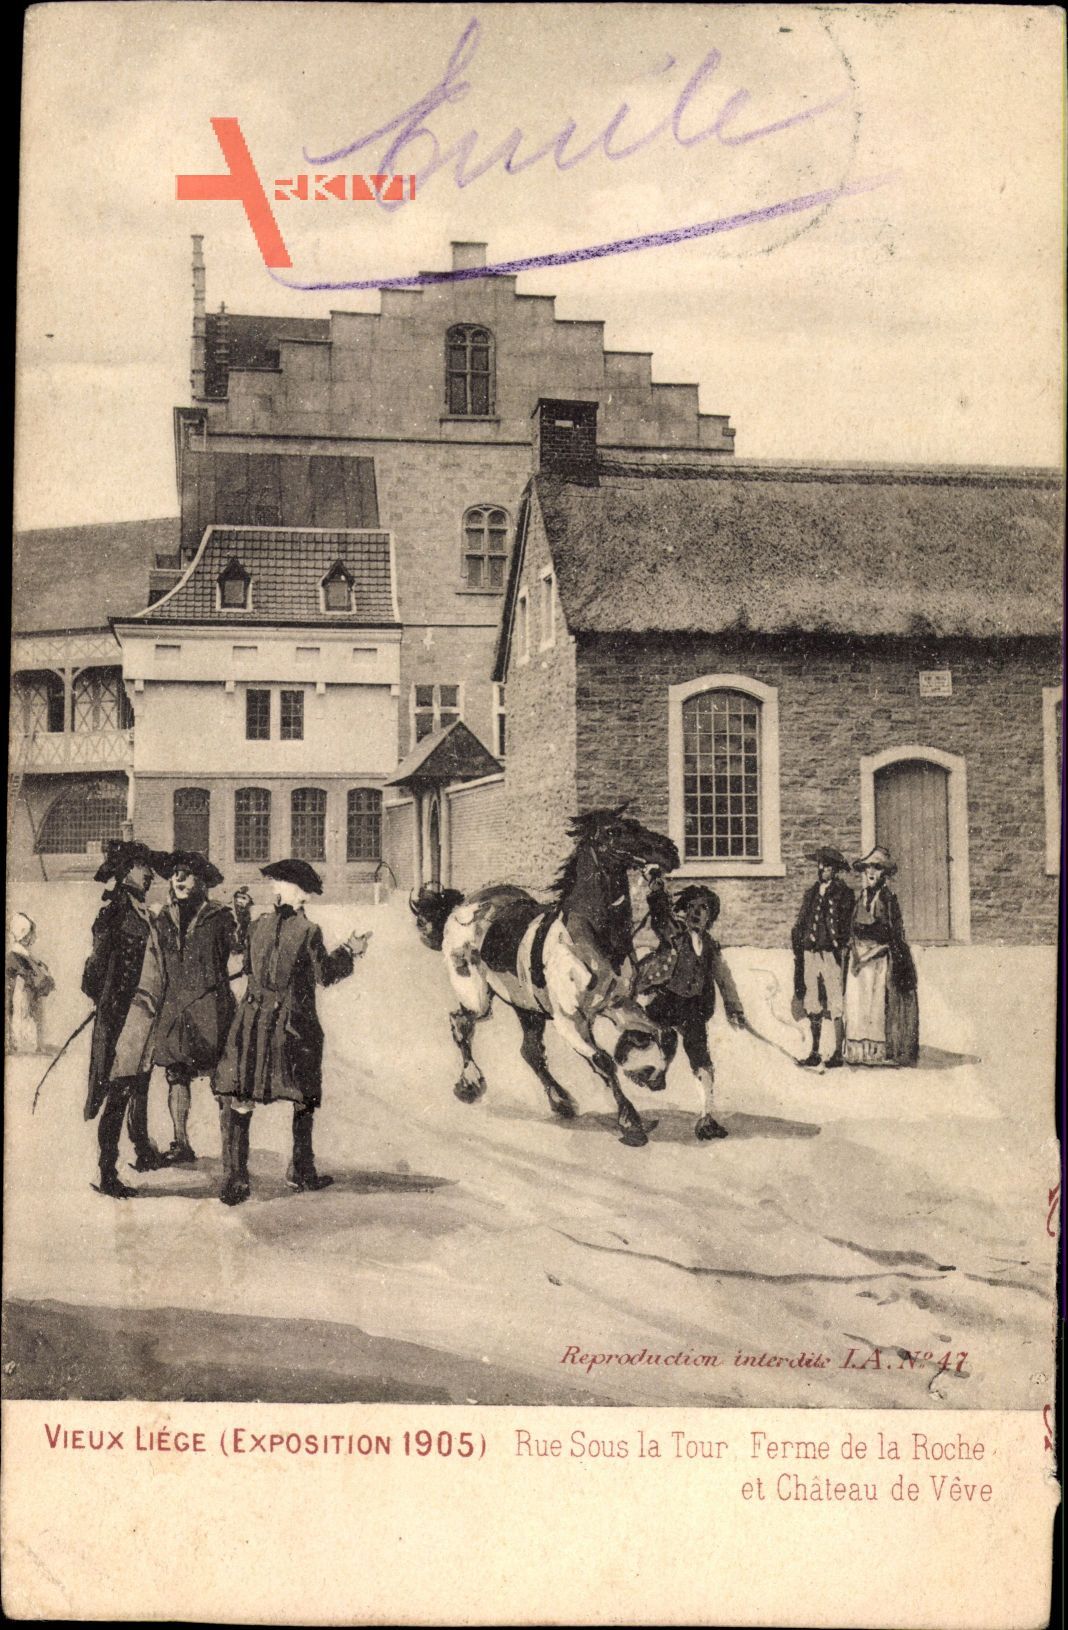 Liège Lüttich Wallonien Belgien, Exposition 1905, rue sous la Tour Ferme